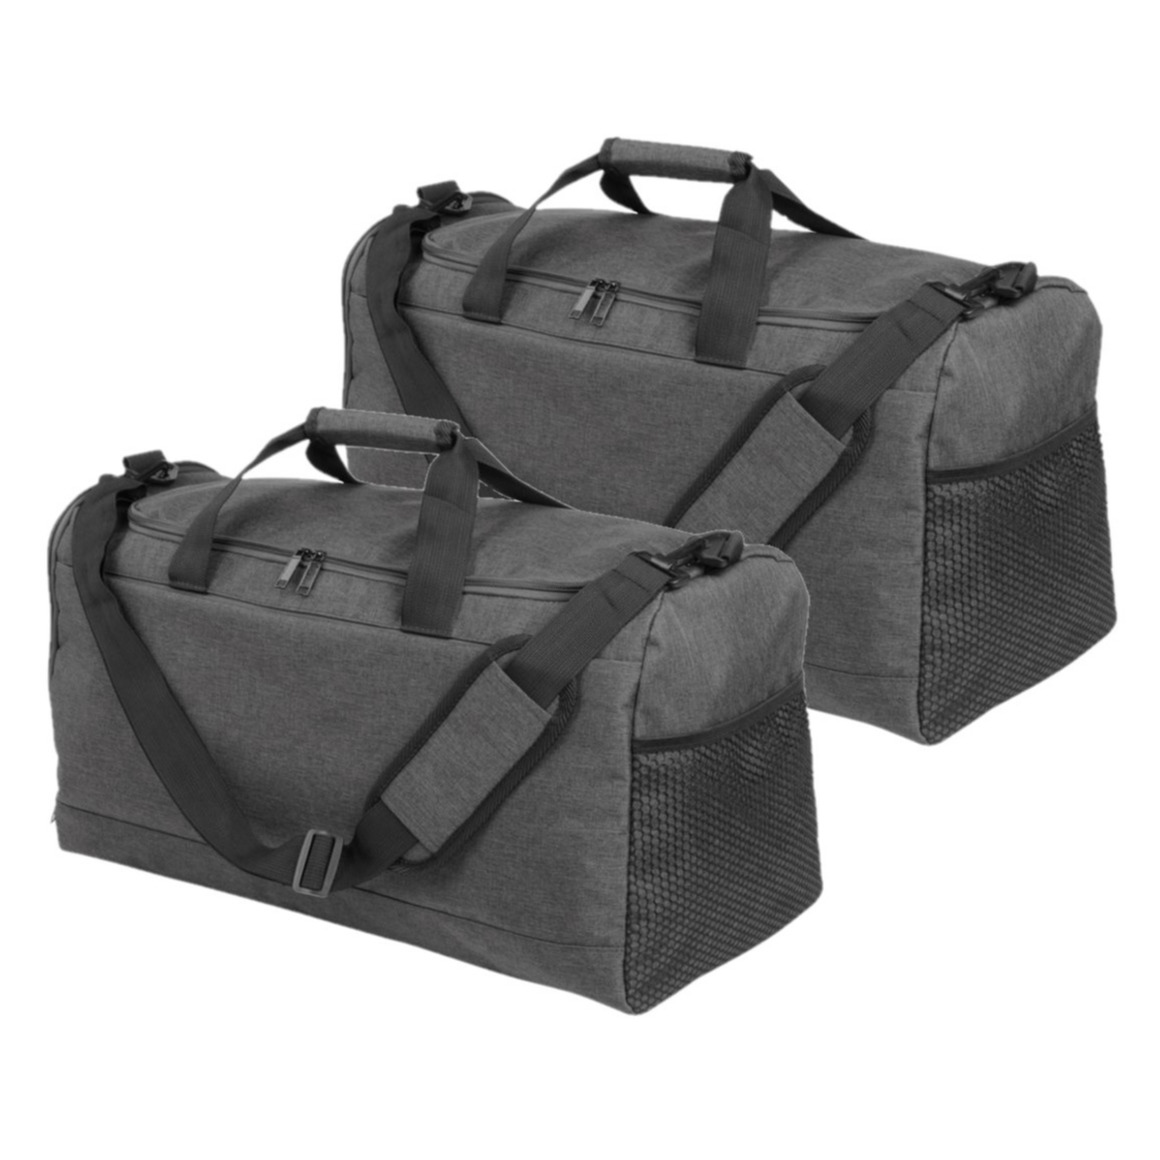 Set van 2x stuks donkergrijze sporttassen-fitnesstassen met schoenenvak 54 cm